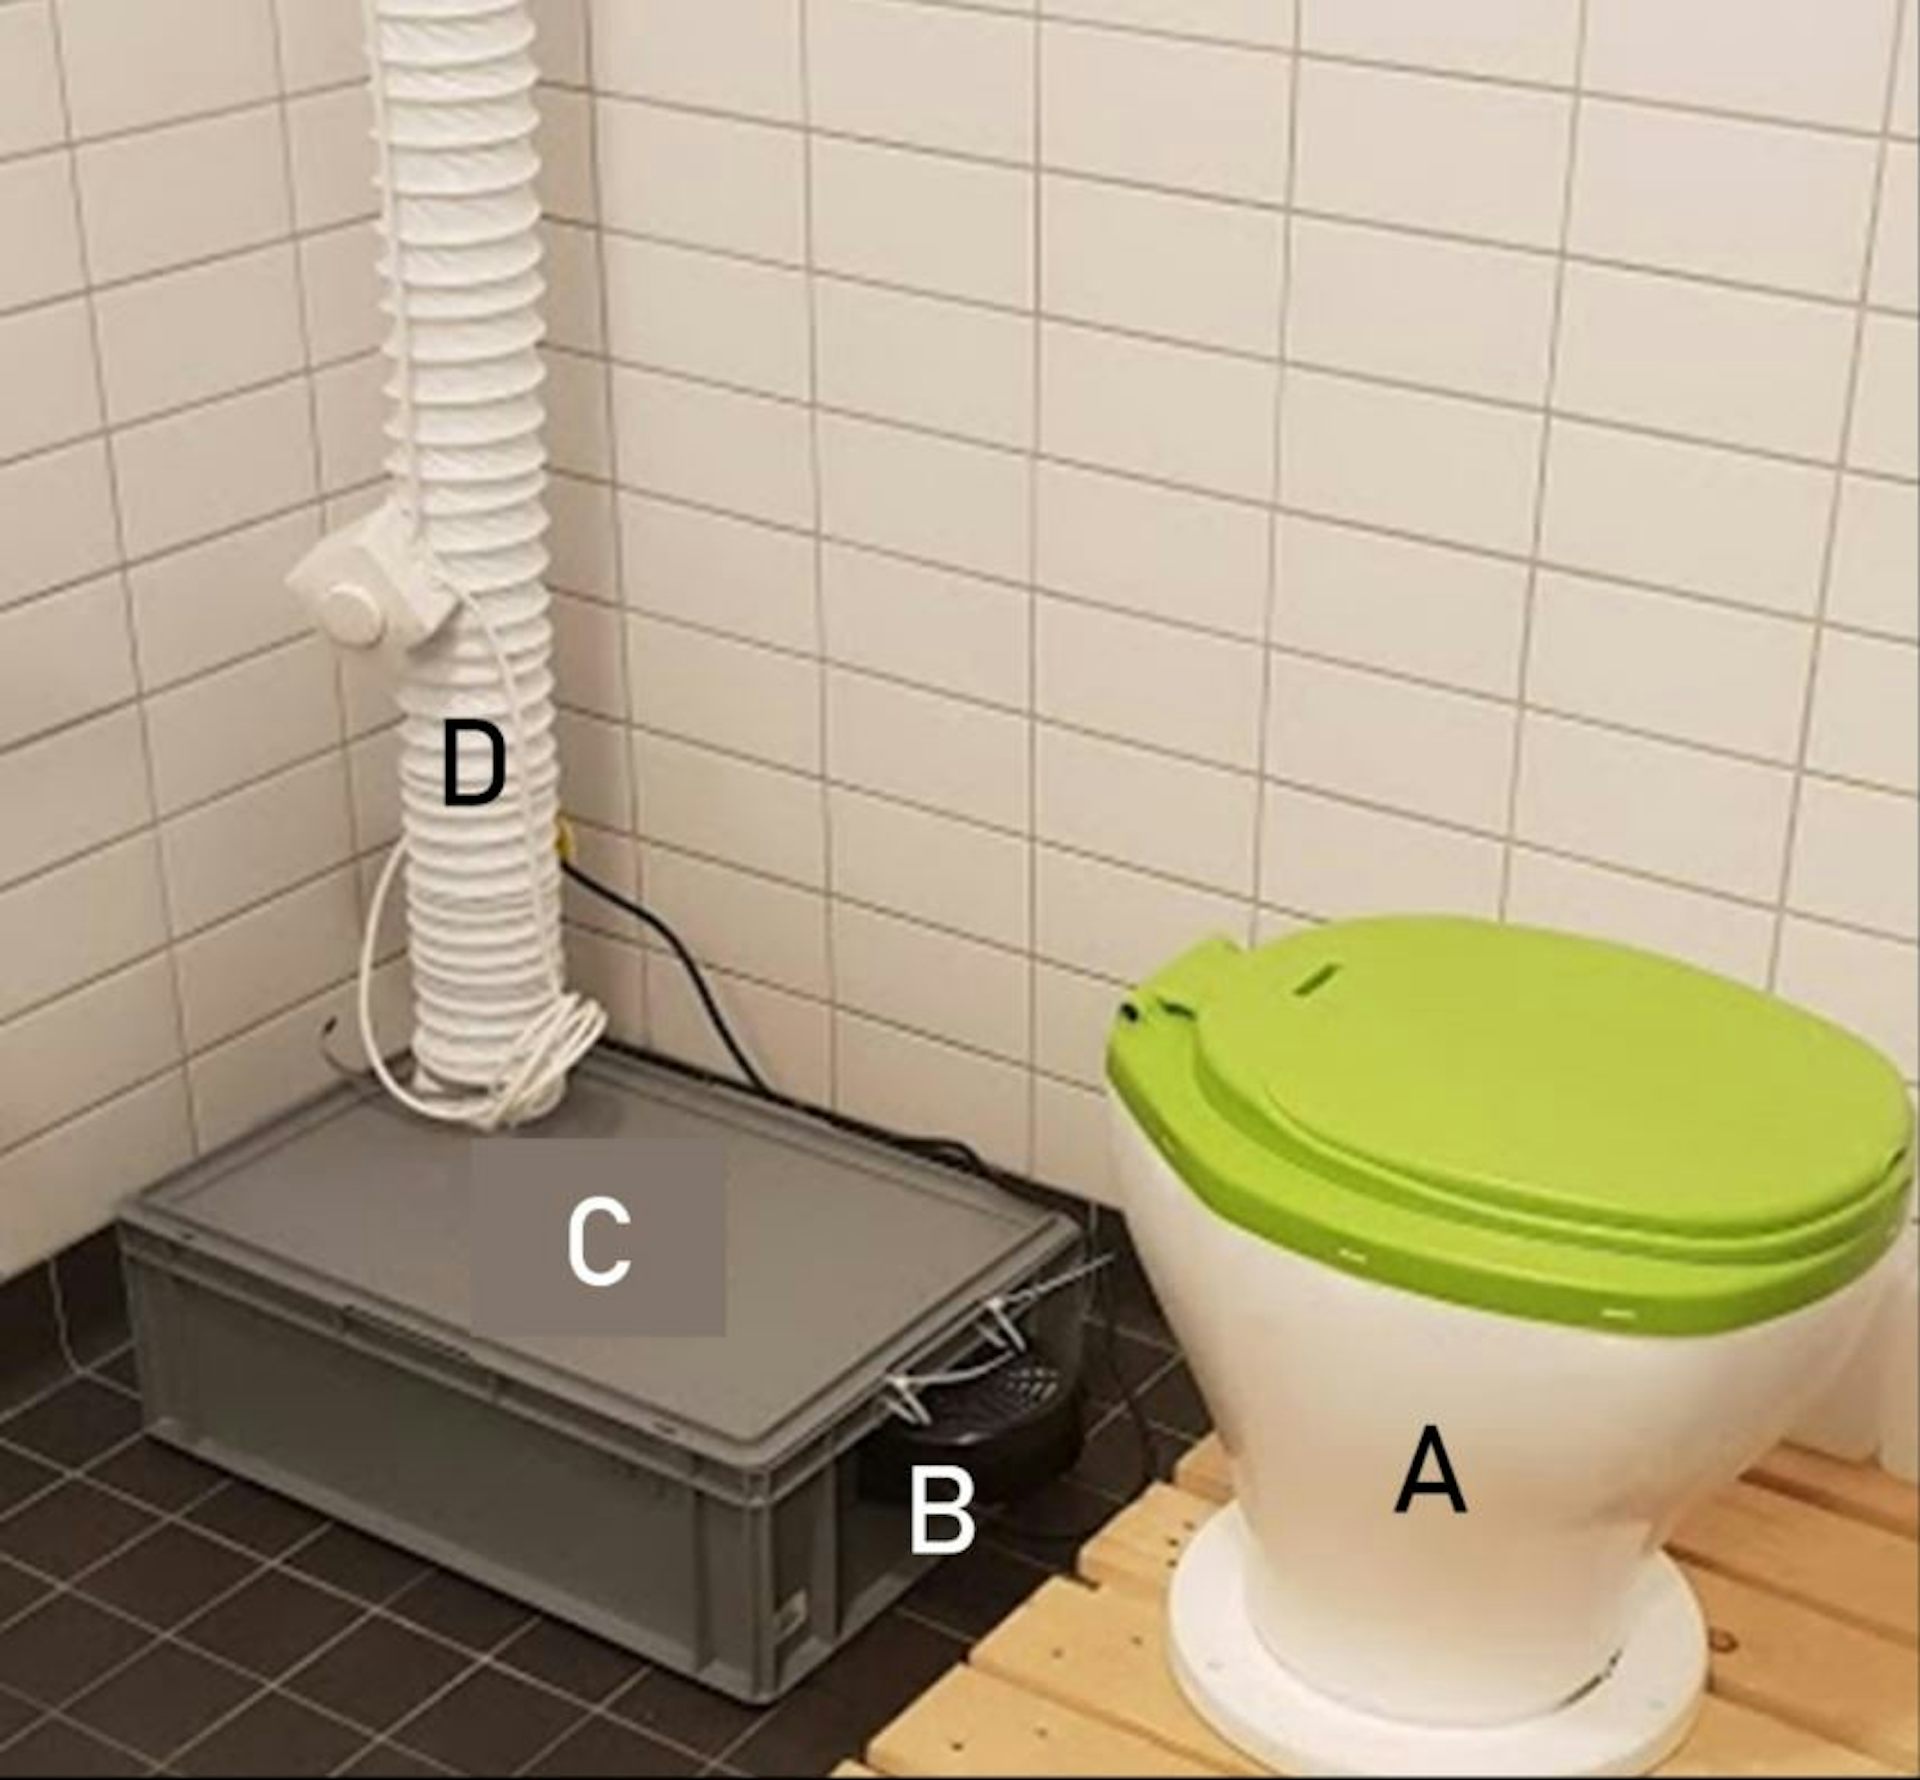 um banheiro seco que separa a urina.